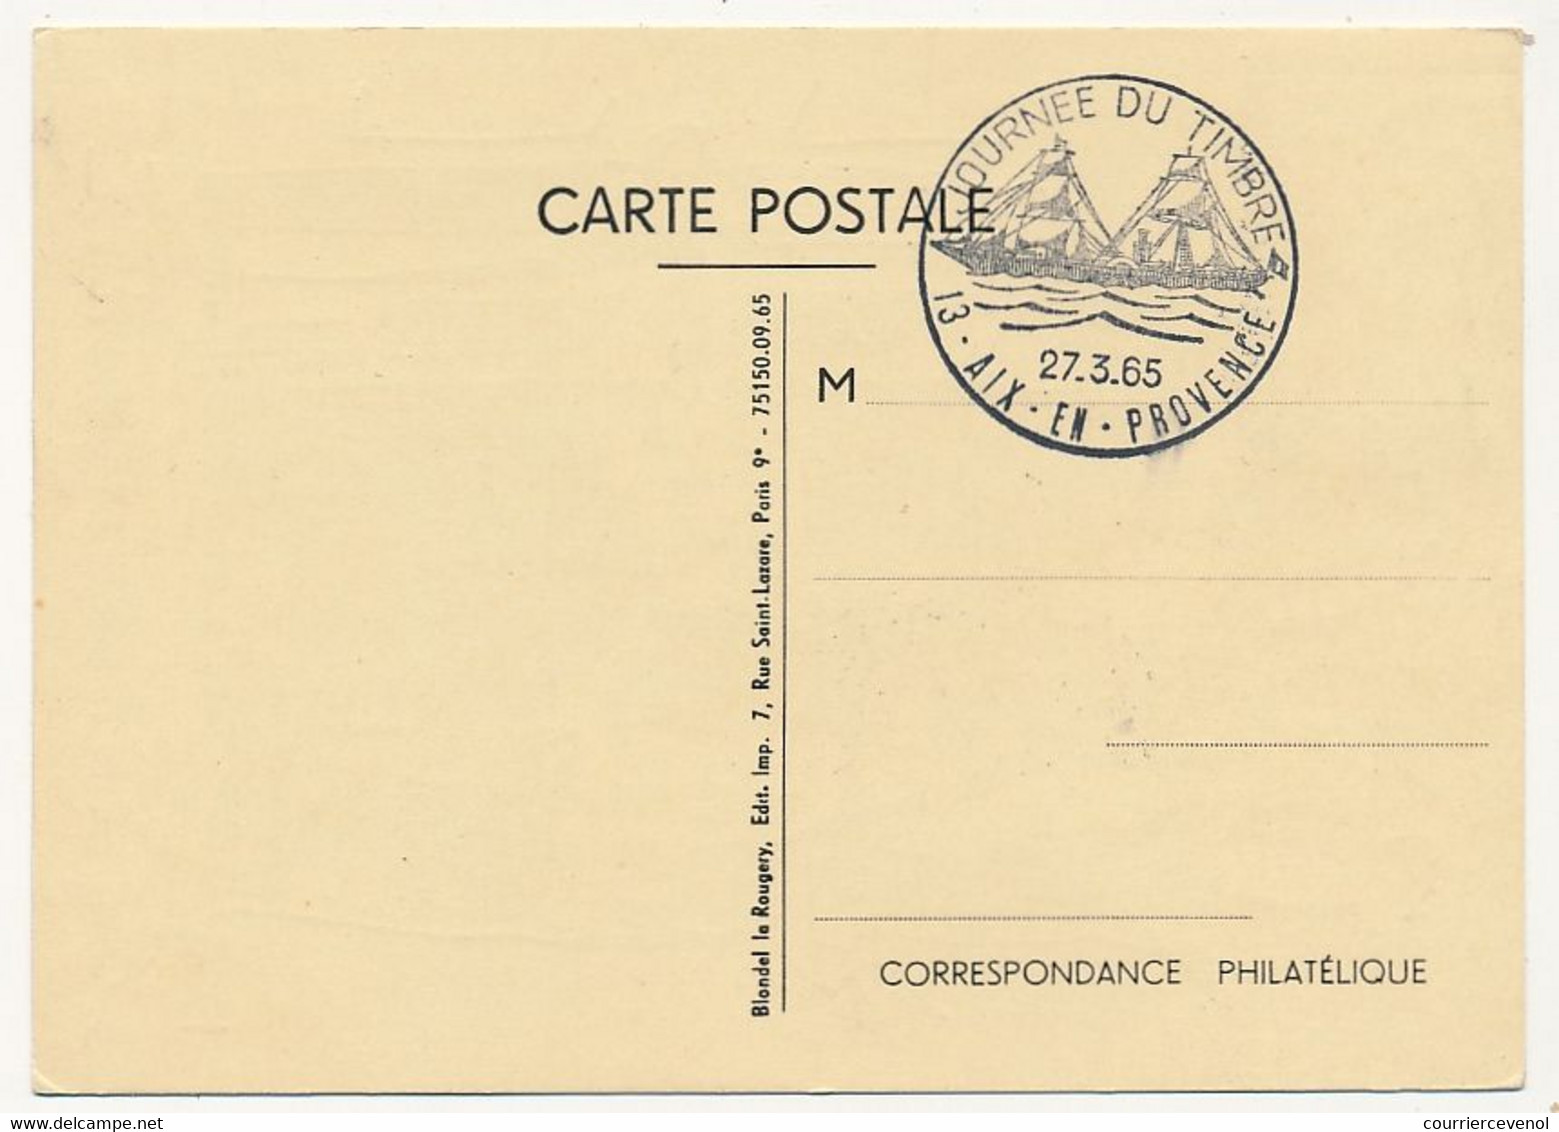 FRANCE - Carte Locale - Journée Du Timbre 1965 (La Guienne) - 13 AIX EN PROVENCE - 27 / 3 / 1965 - Journée Du Timbre